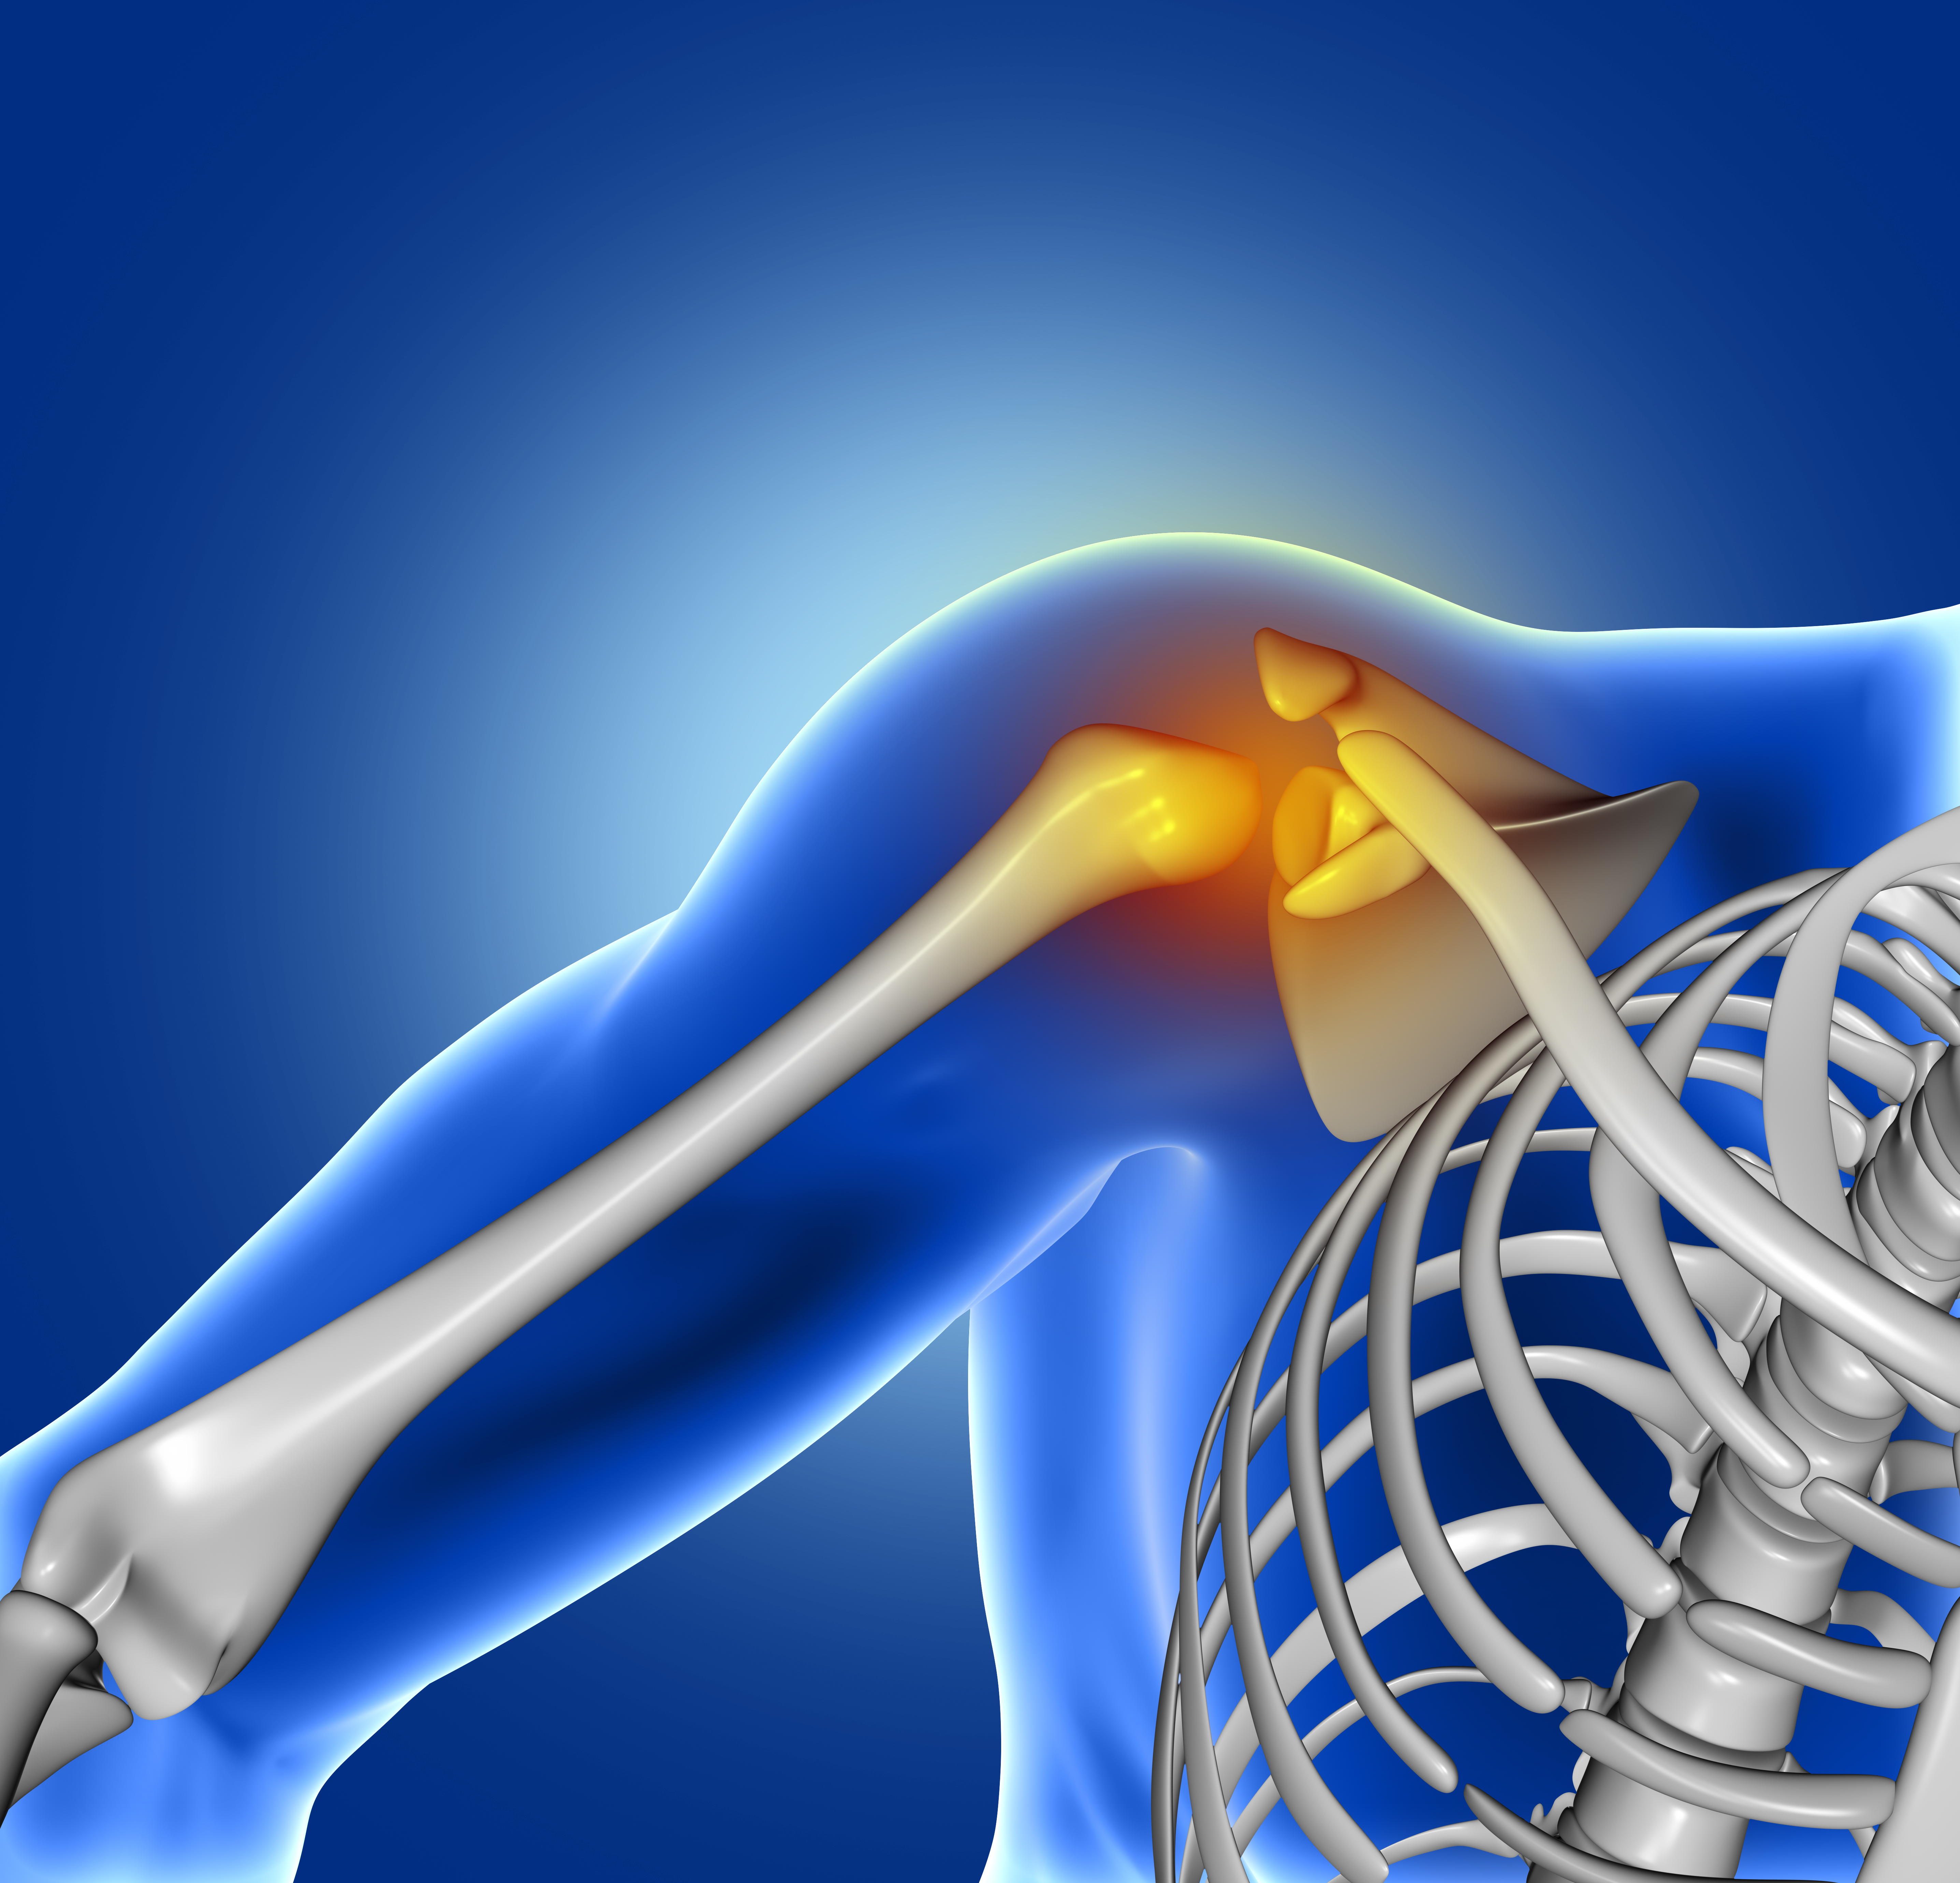 Shoulder Joint Pain